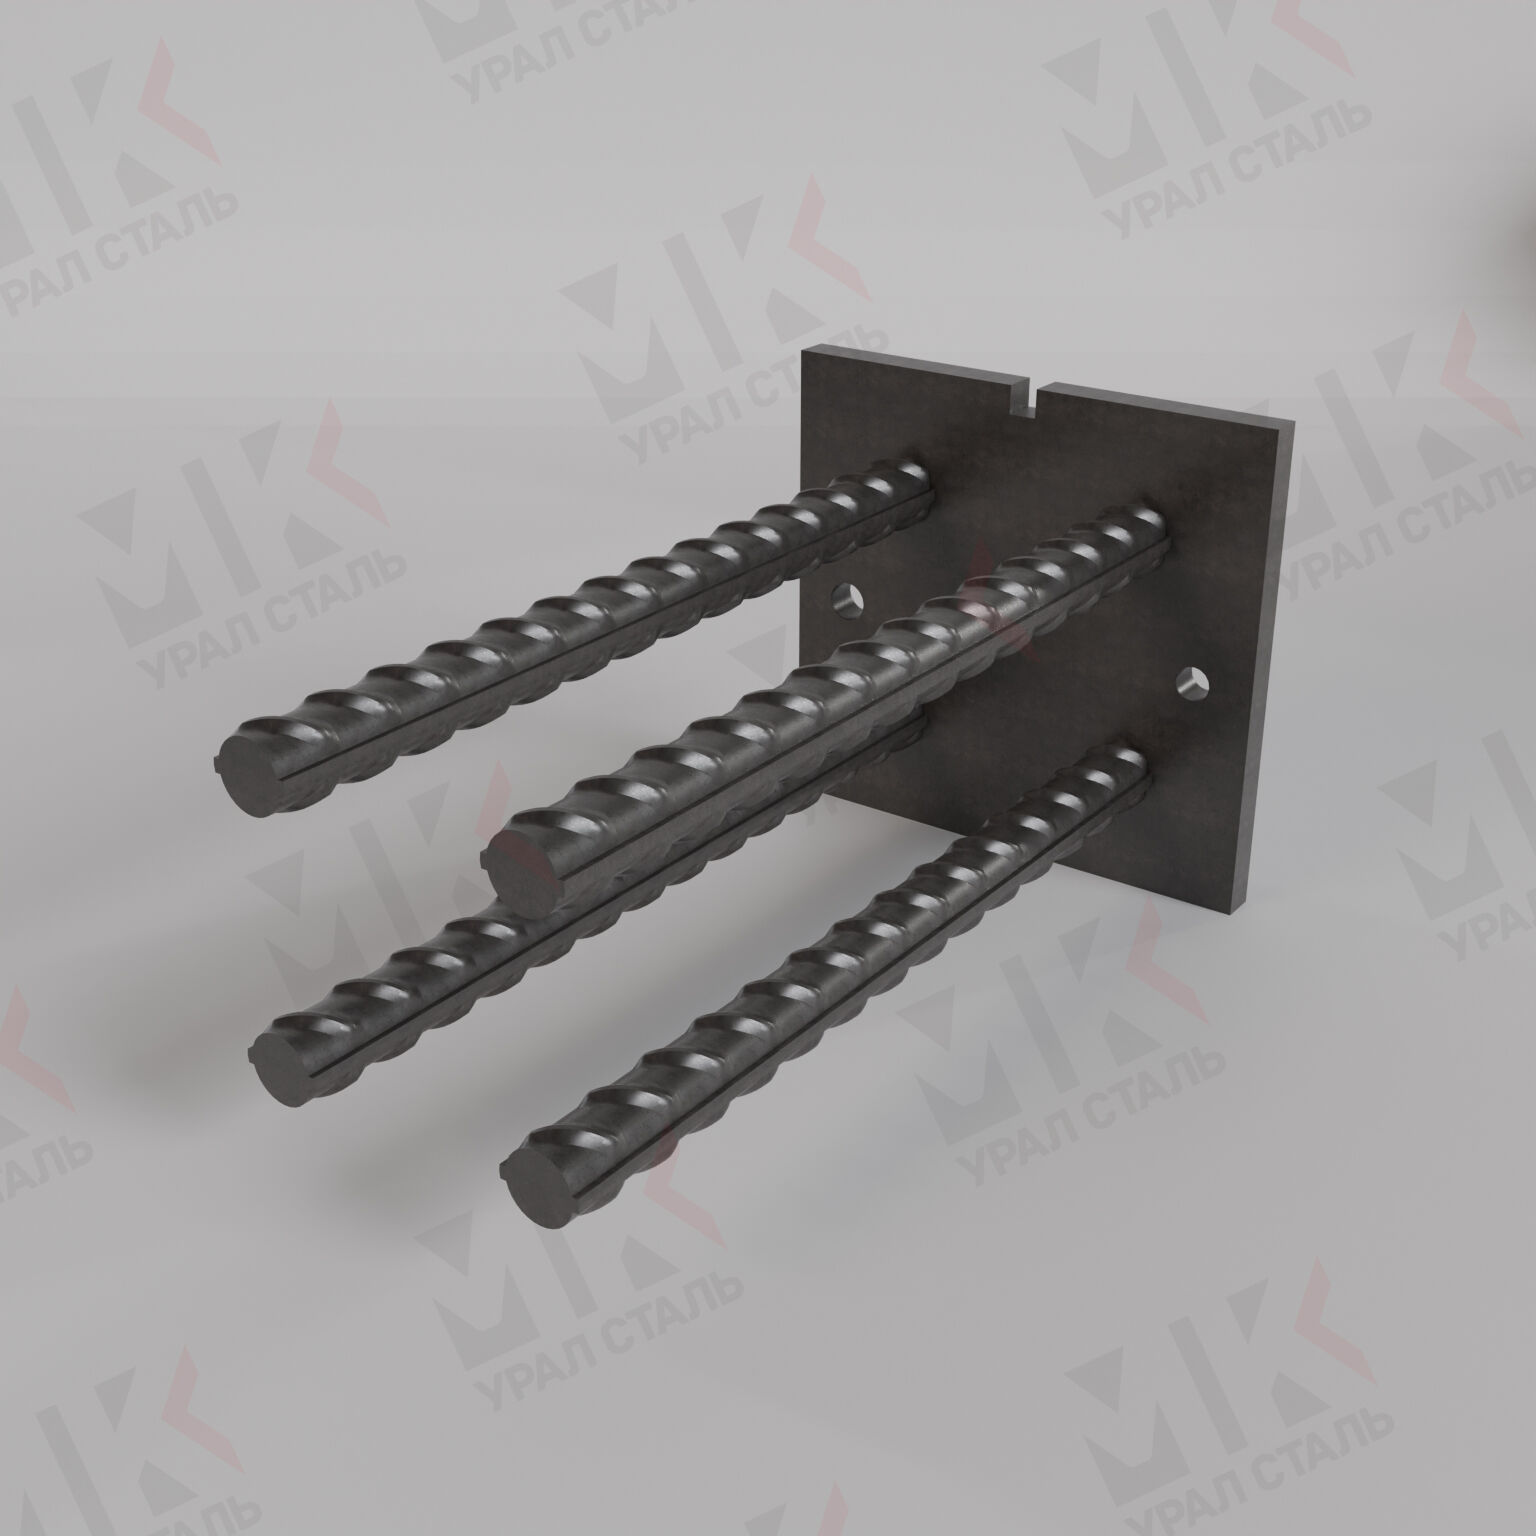 Закладная деталь М-0-2 серия 1.400-6/76 для железобетонных конструкций